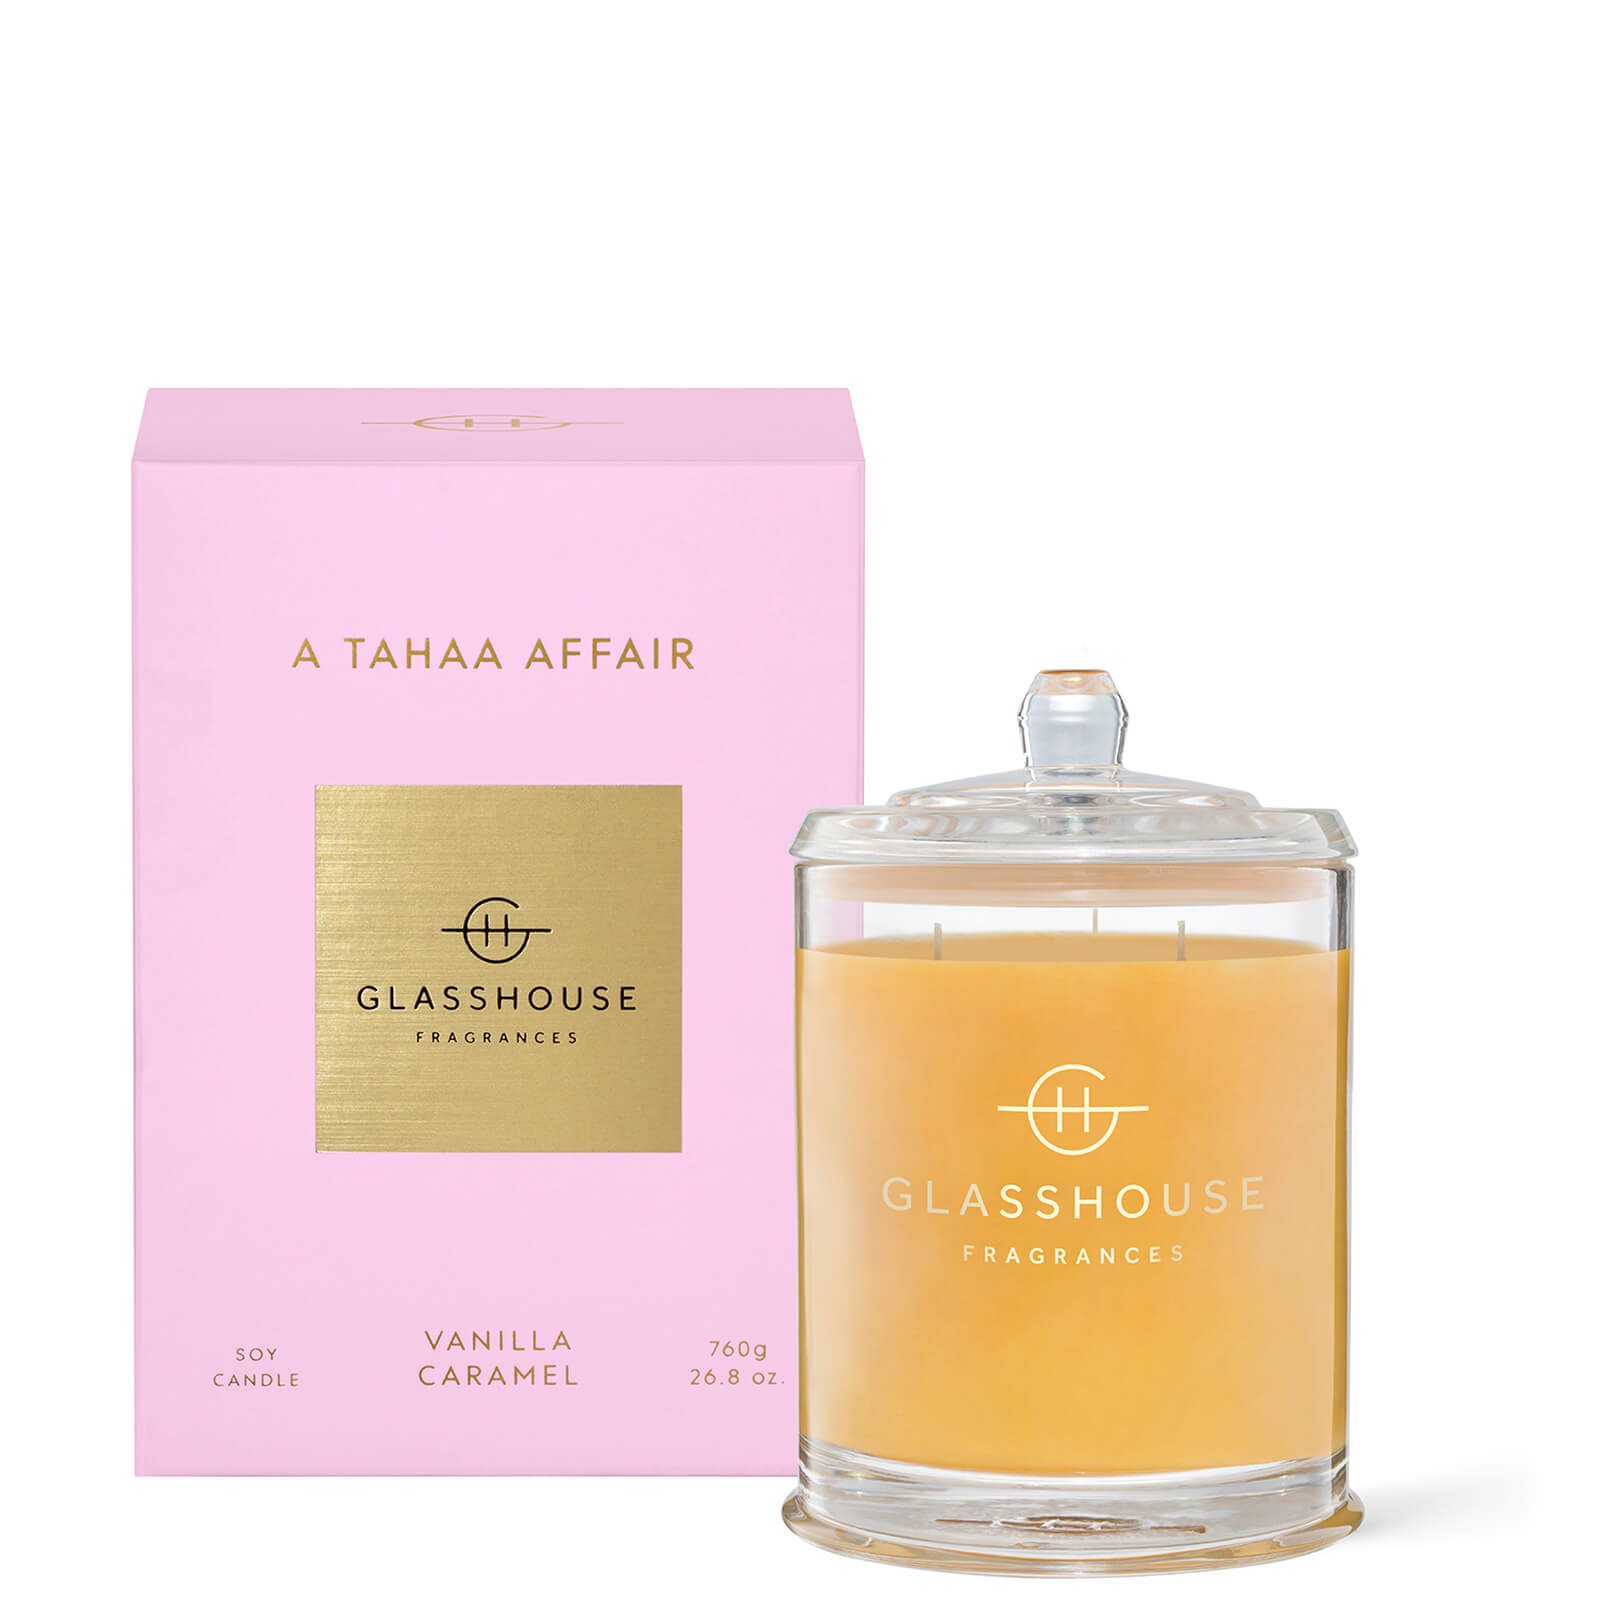 Glasshouse Fragrances Glasshouse A Tahaa Affair Candle 760g